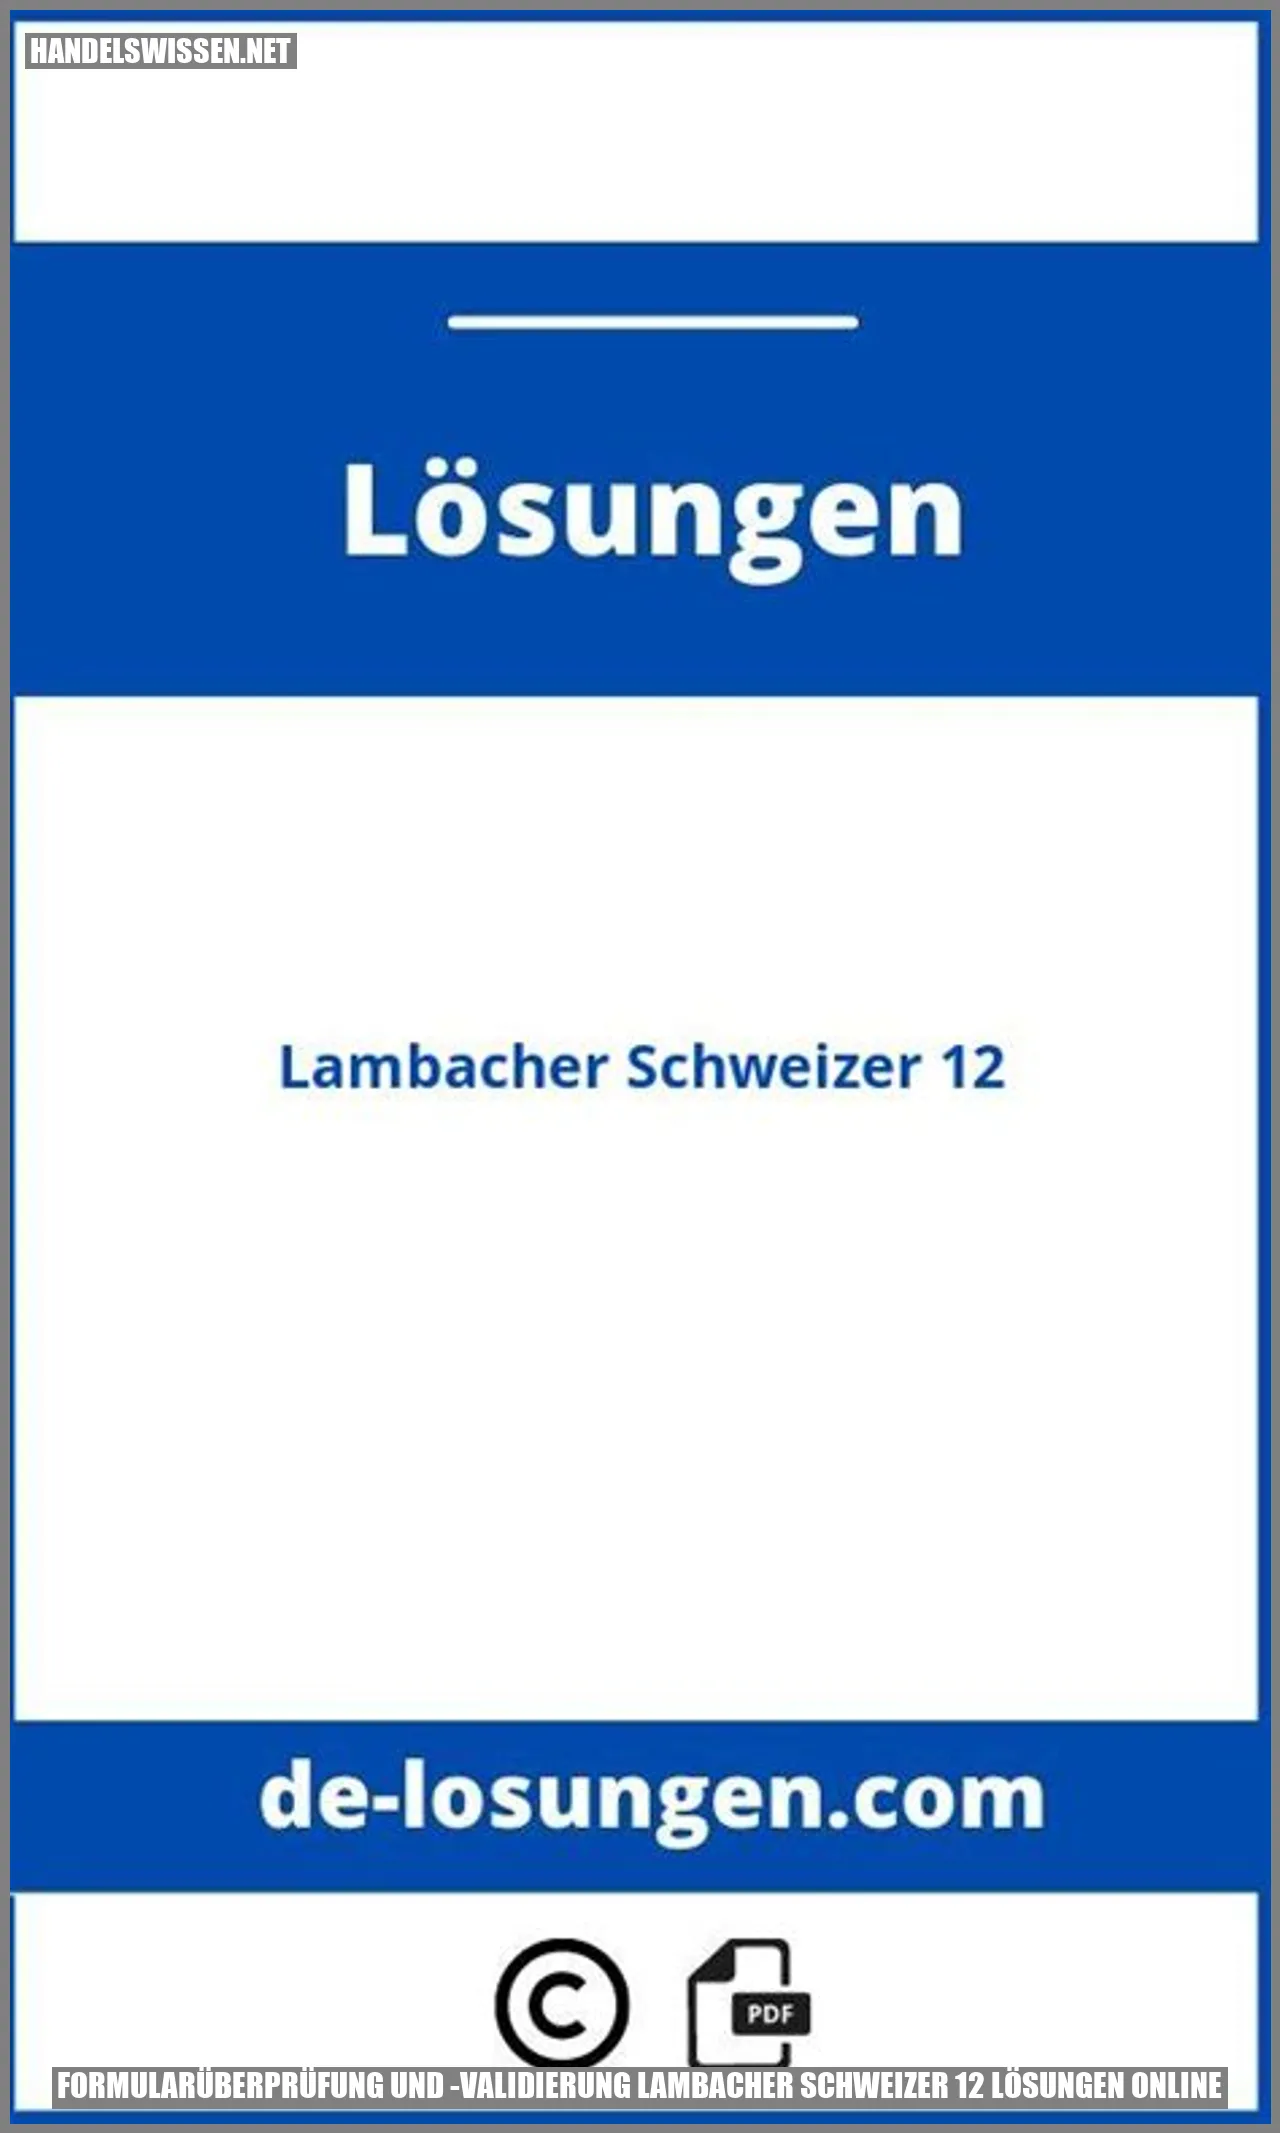 Formularüberprüfung und -validierung Lambacher Schweizer 12 Lösungen Online